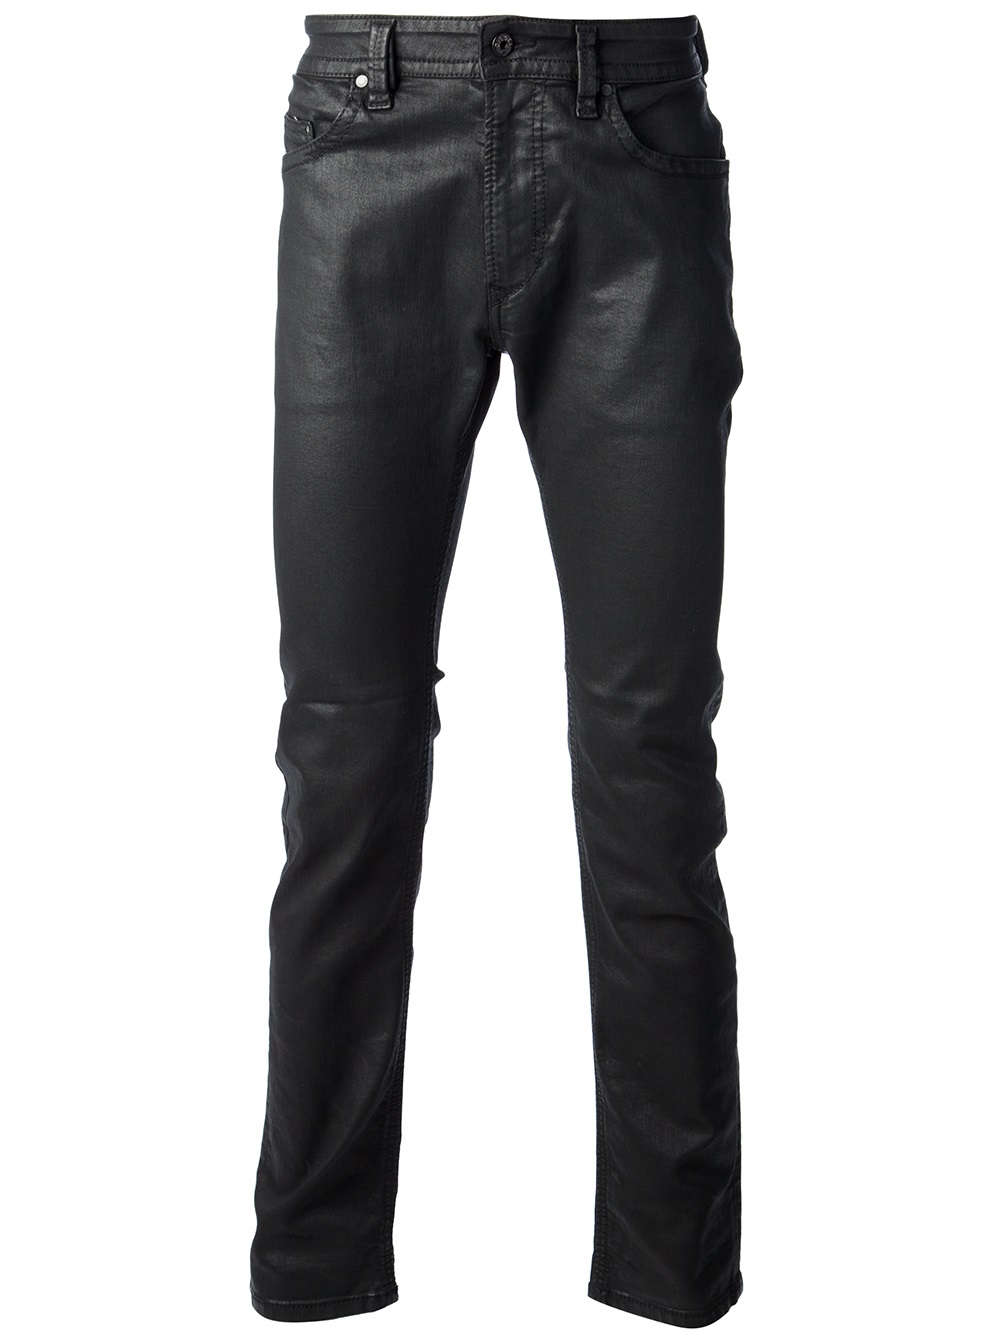 DIESEL Waxed Denim Jeans in Black for Men - Lyst